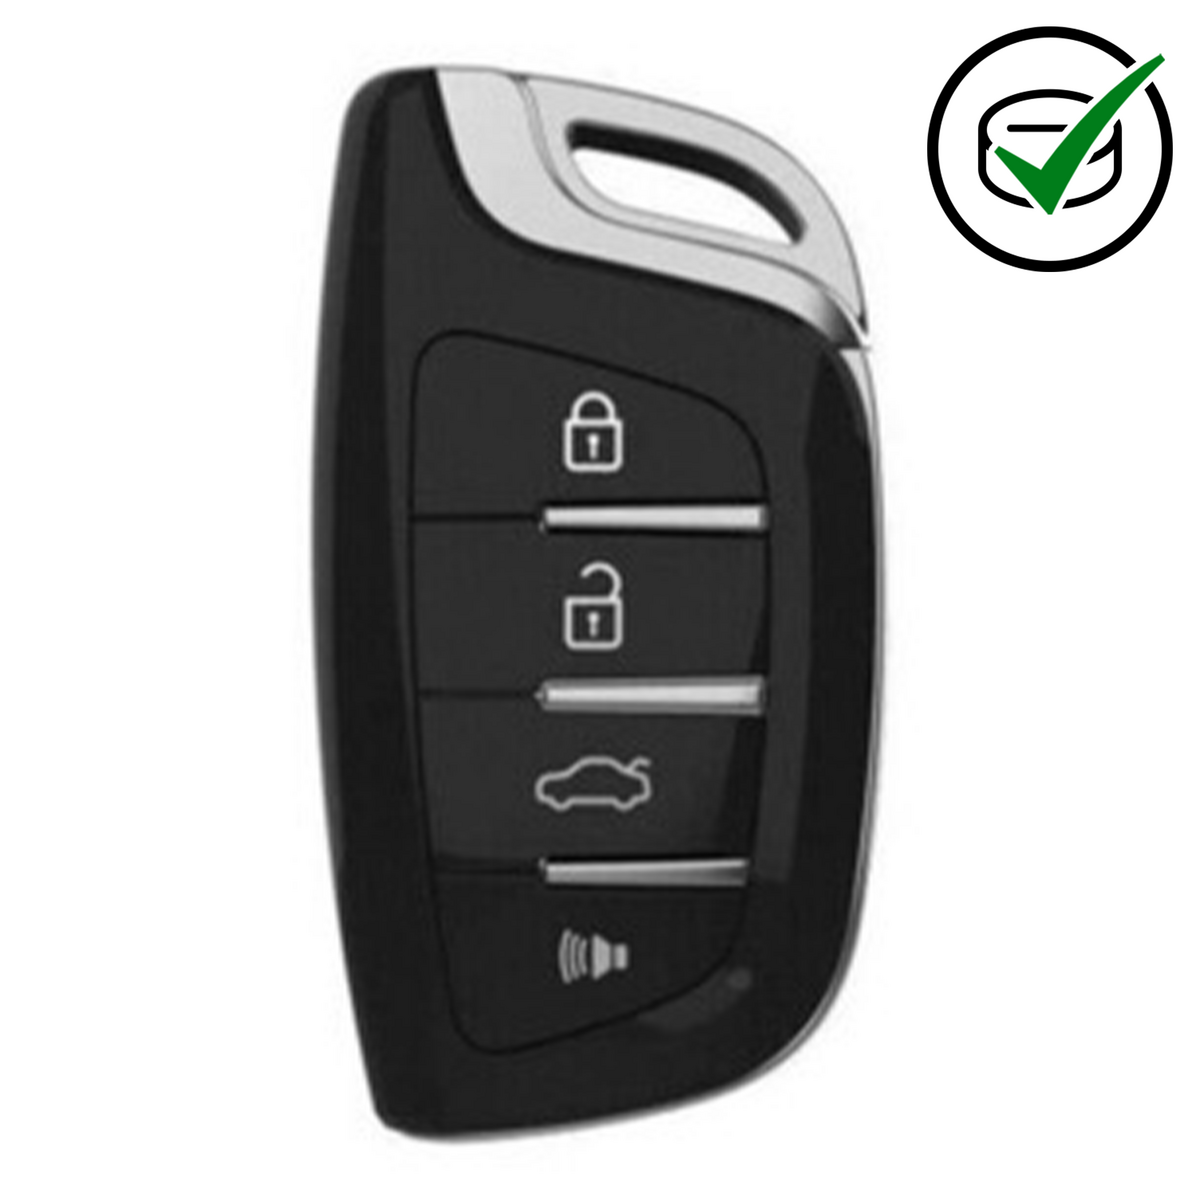 VVDIXSCS00EN Key tool 4 button Universal wireless Smart remote